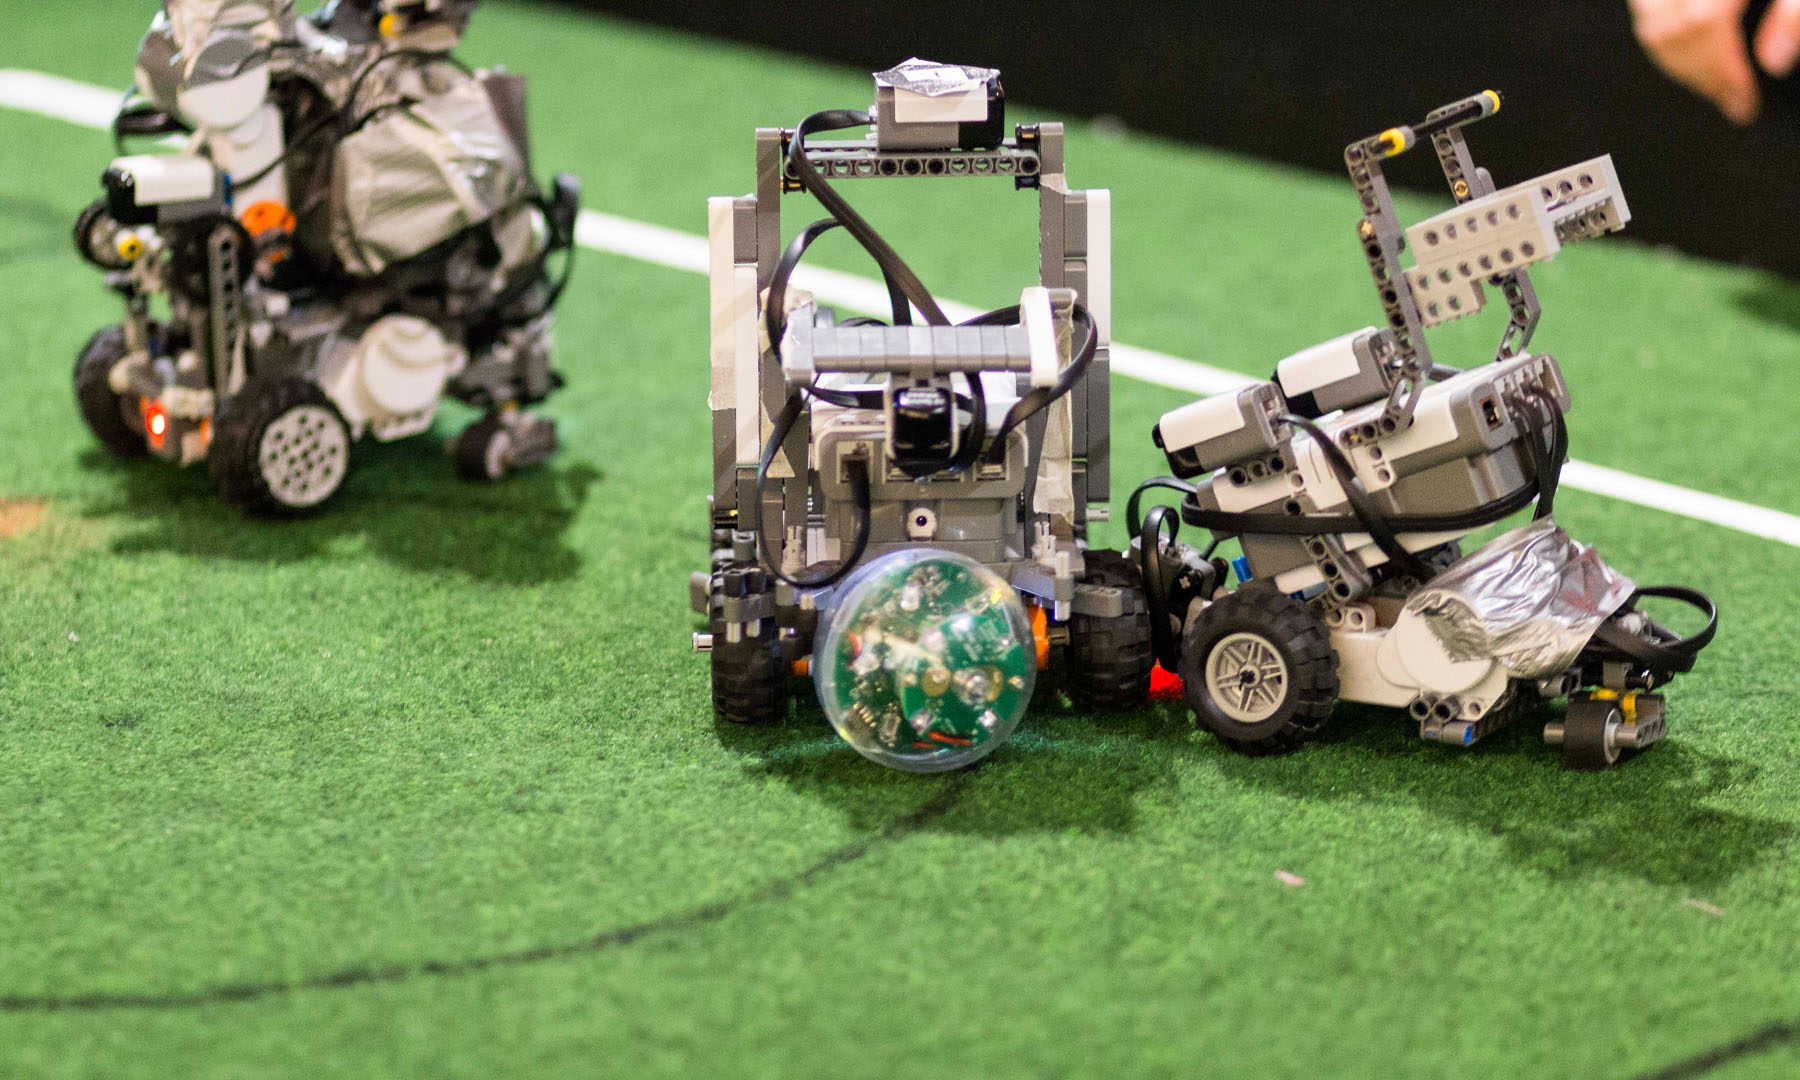 … nach Innsbruck, um in verschiedenen Disziplinen anzutreten. Im Bild treten die Roboter etwa in Fußball („Soccer“) gegeneinander an.